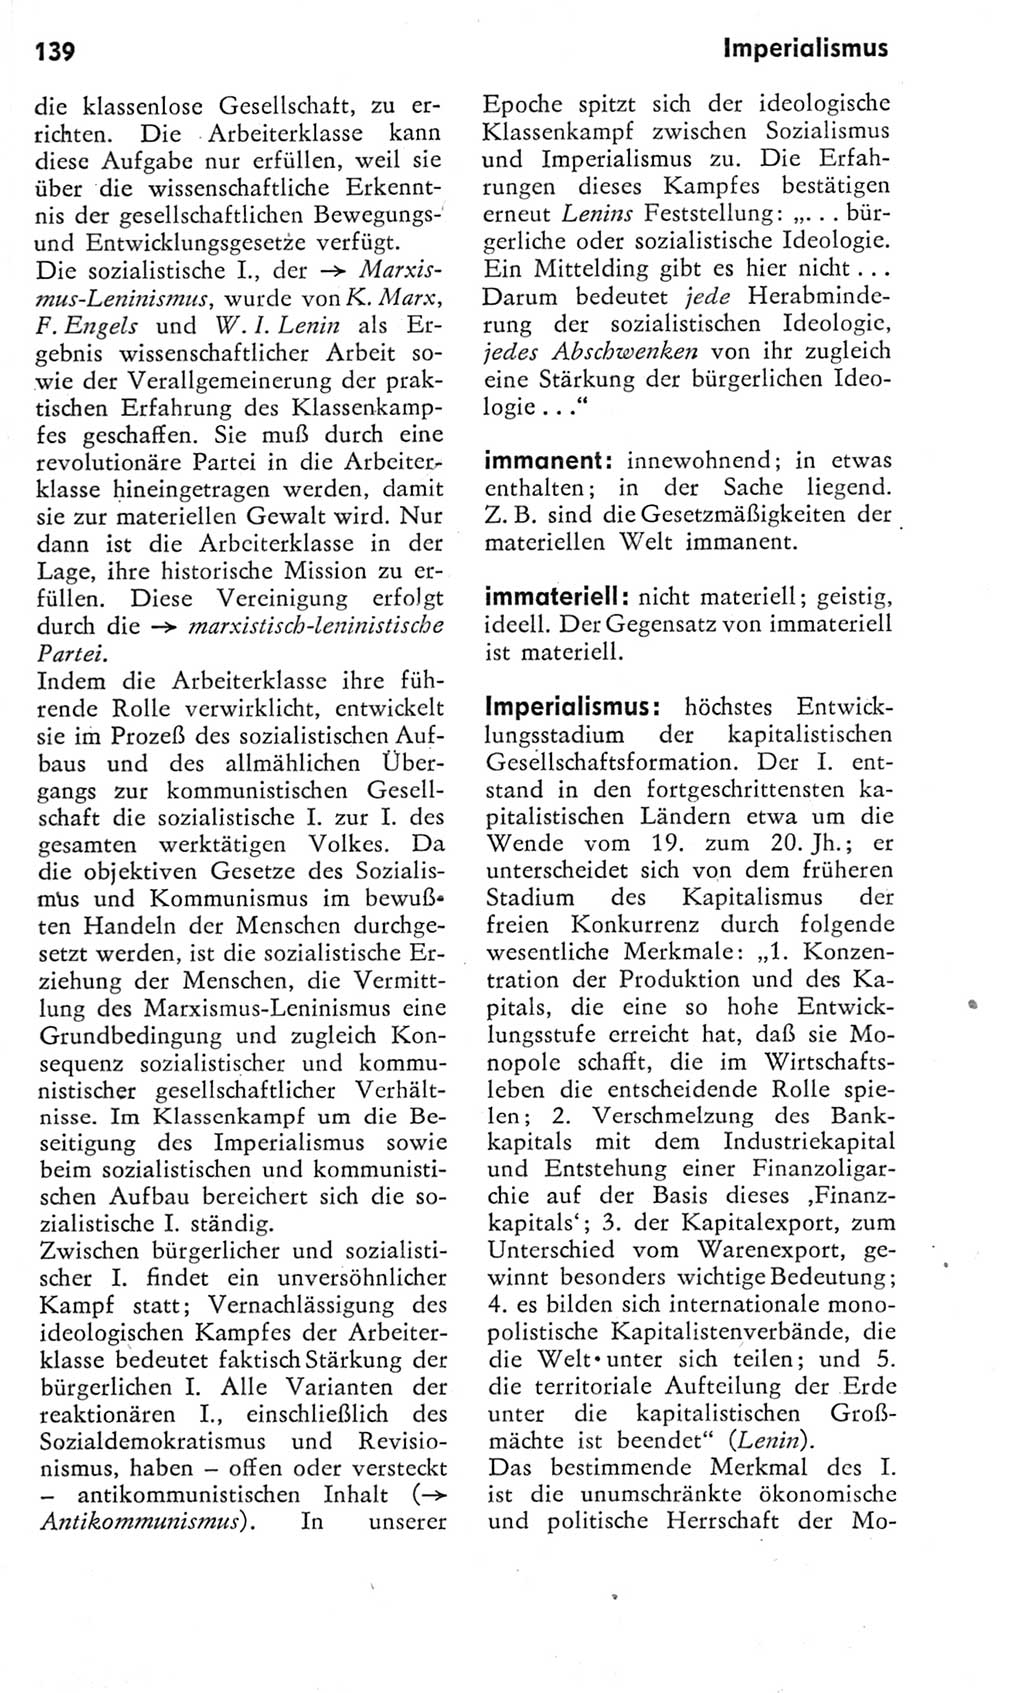 Kleines Wörterbuch der marxistisch-leninistischen Philosophie [Deutsche Demokratische Republik (DDR)] 1975, Seite 139 (Kl. Wb. ML Phil. DDR 1975, S. 139)